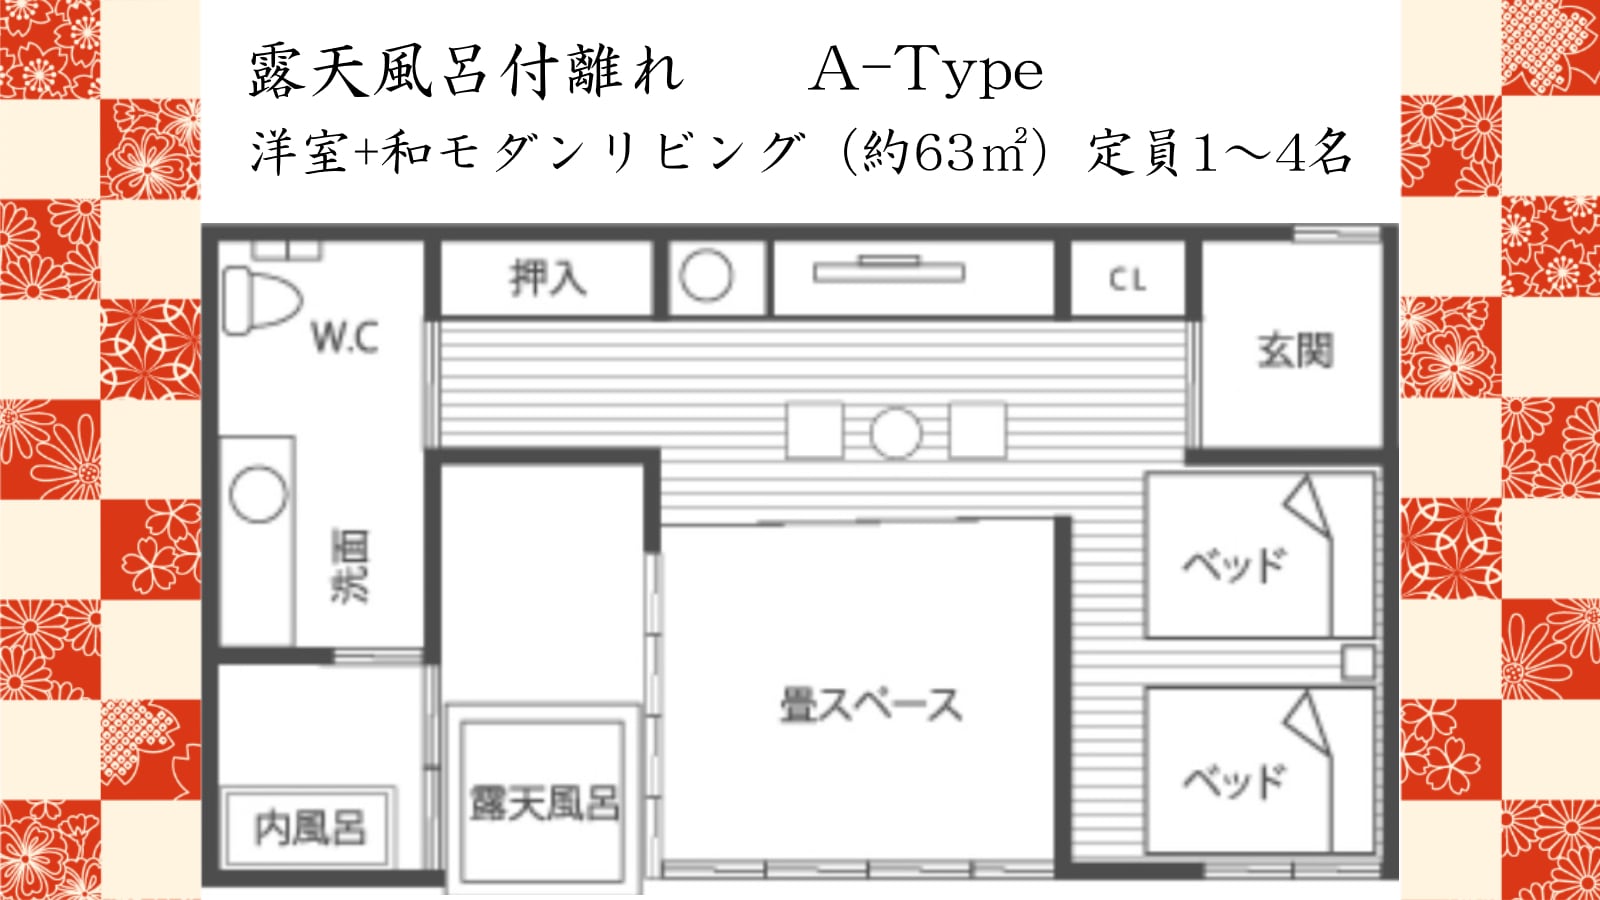 ■ A type floor plan